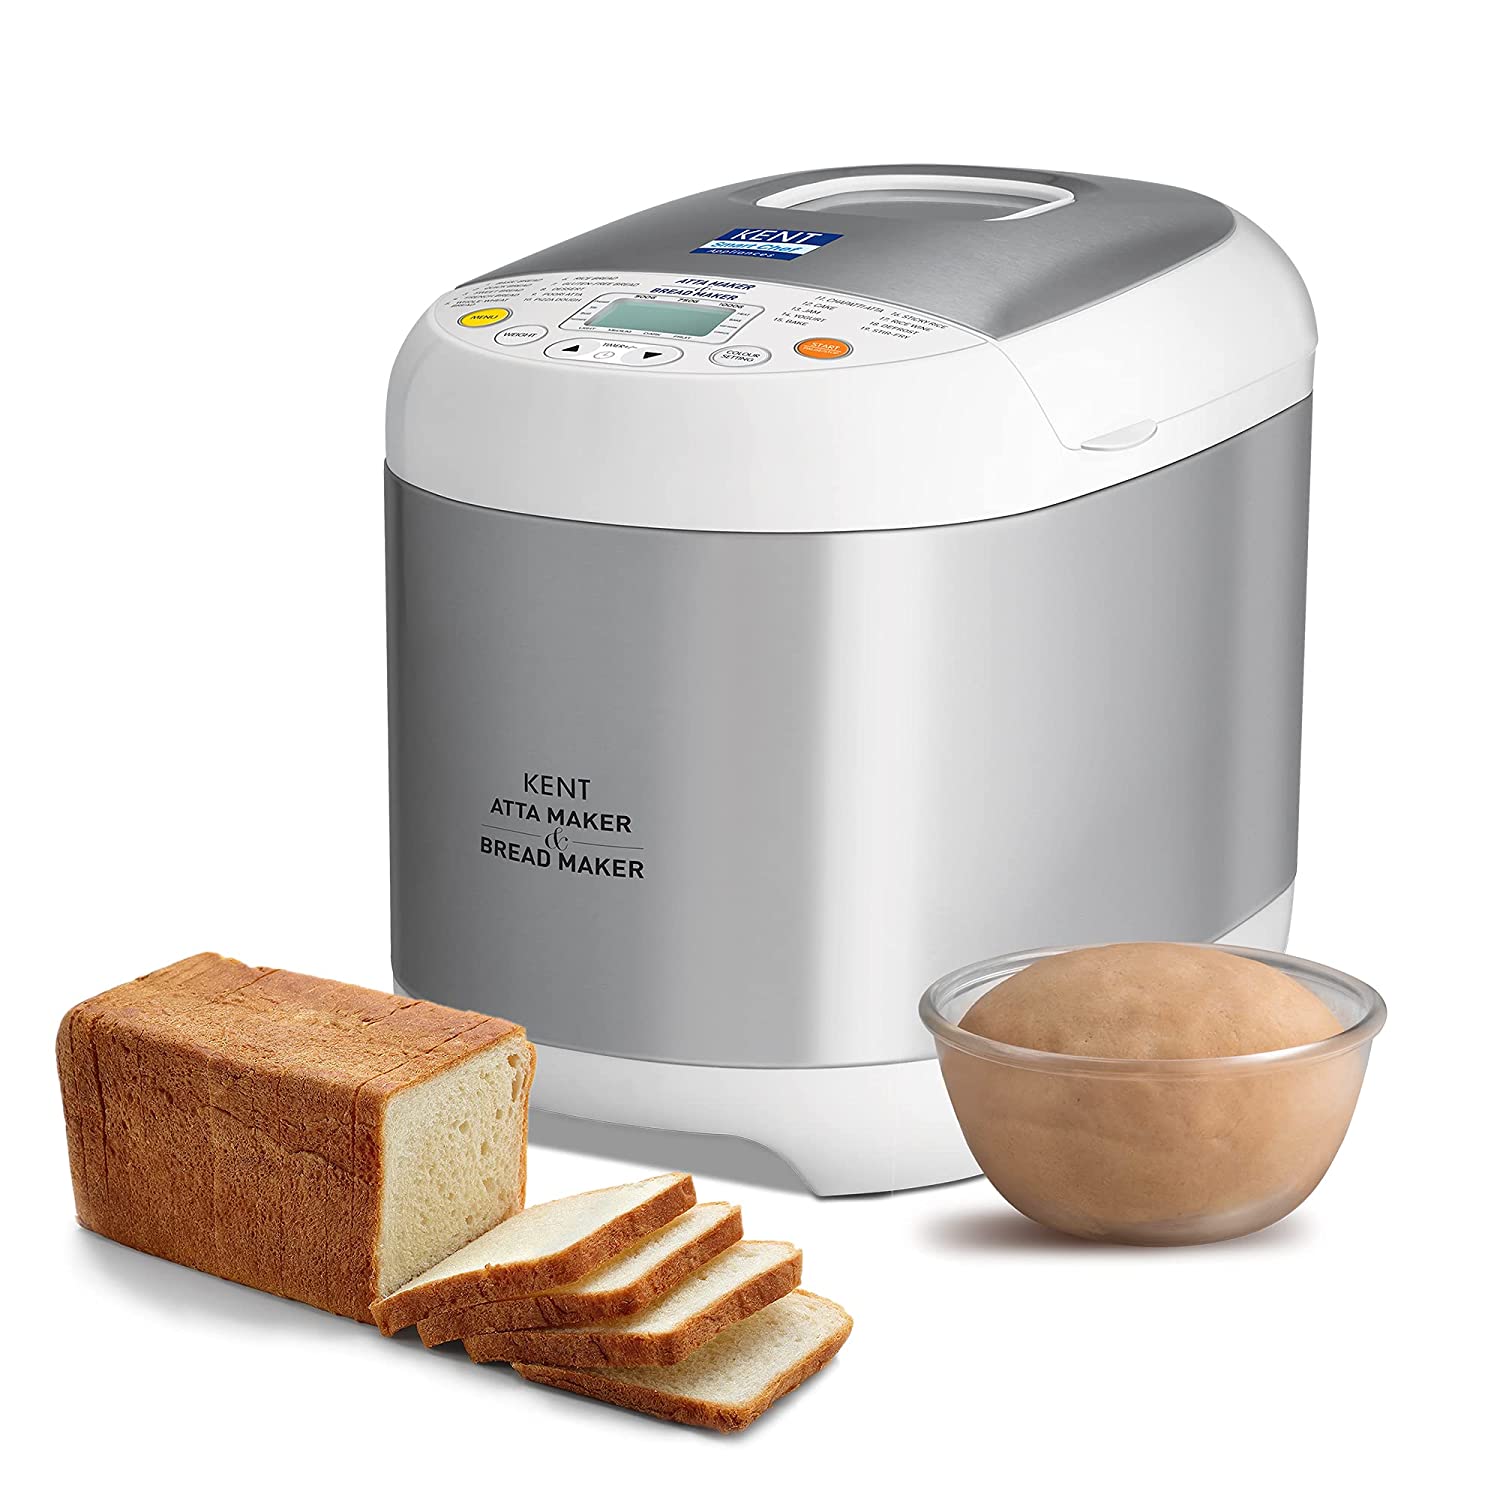 Amazon Offer: बेस्ट सेलिंग Bread Maker की सबसे सस्ती डील, सिर्फ 1 बटन प्रेस करें और घर पर बनायें टेस्टी होम मेड ब्रेड